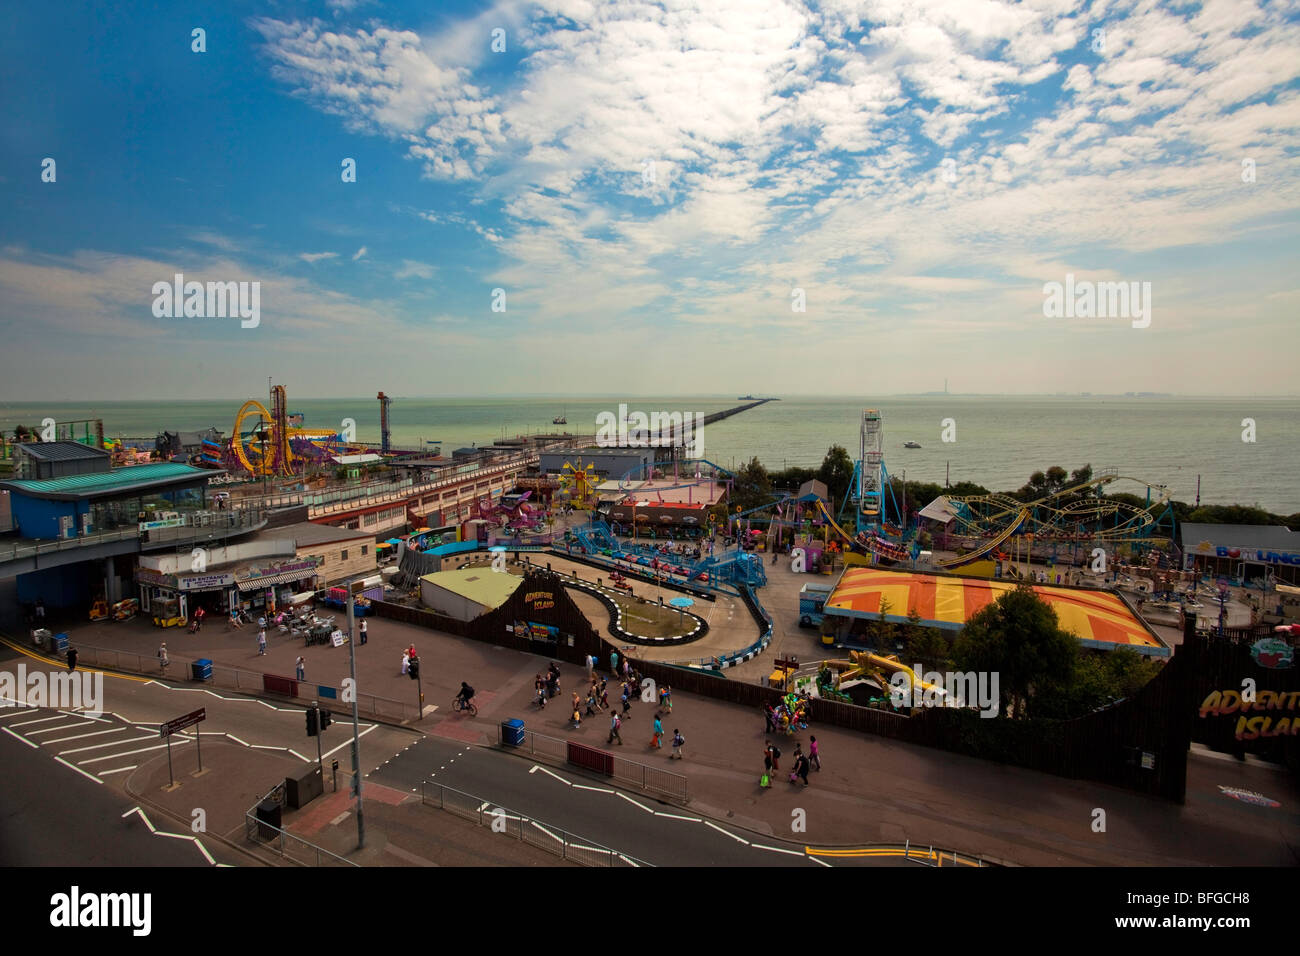 Southend Pier & Adventure Island Amusement Park Stock Photo